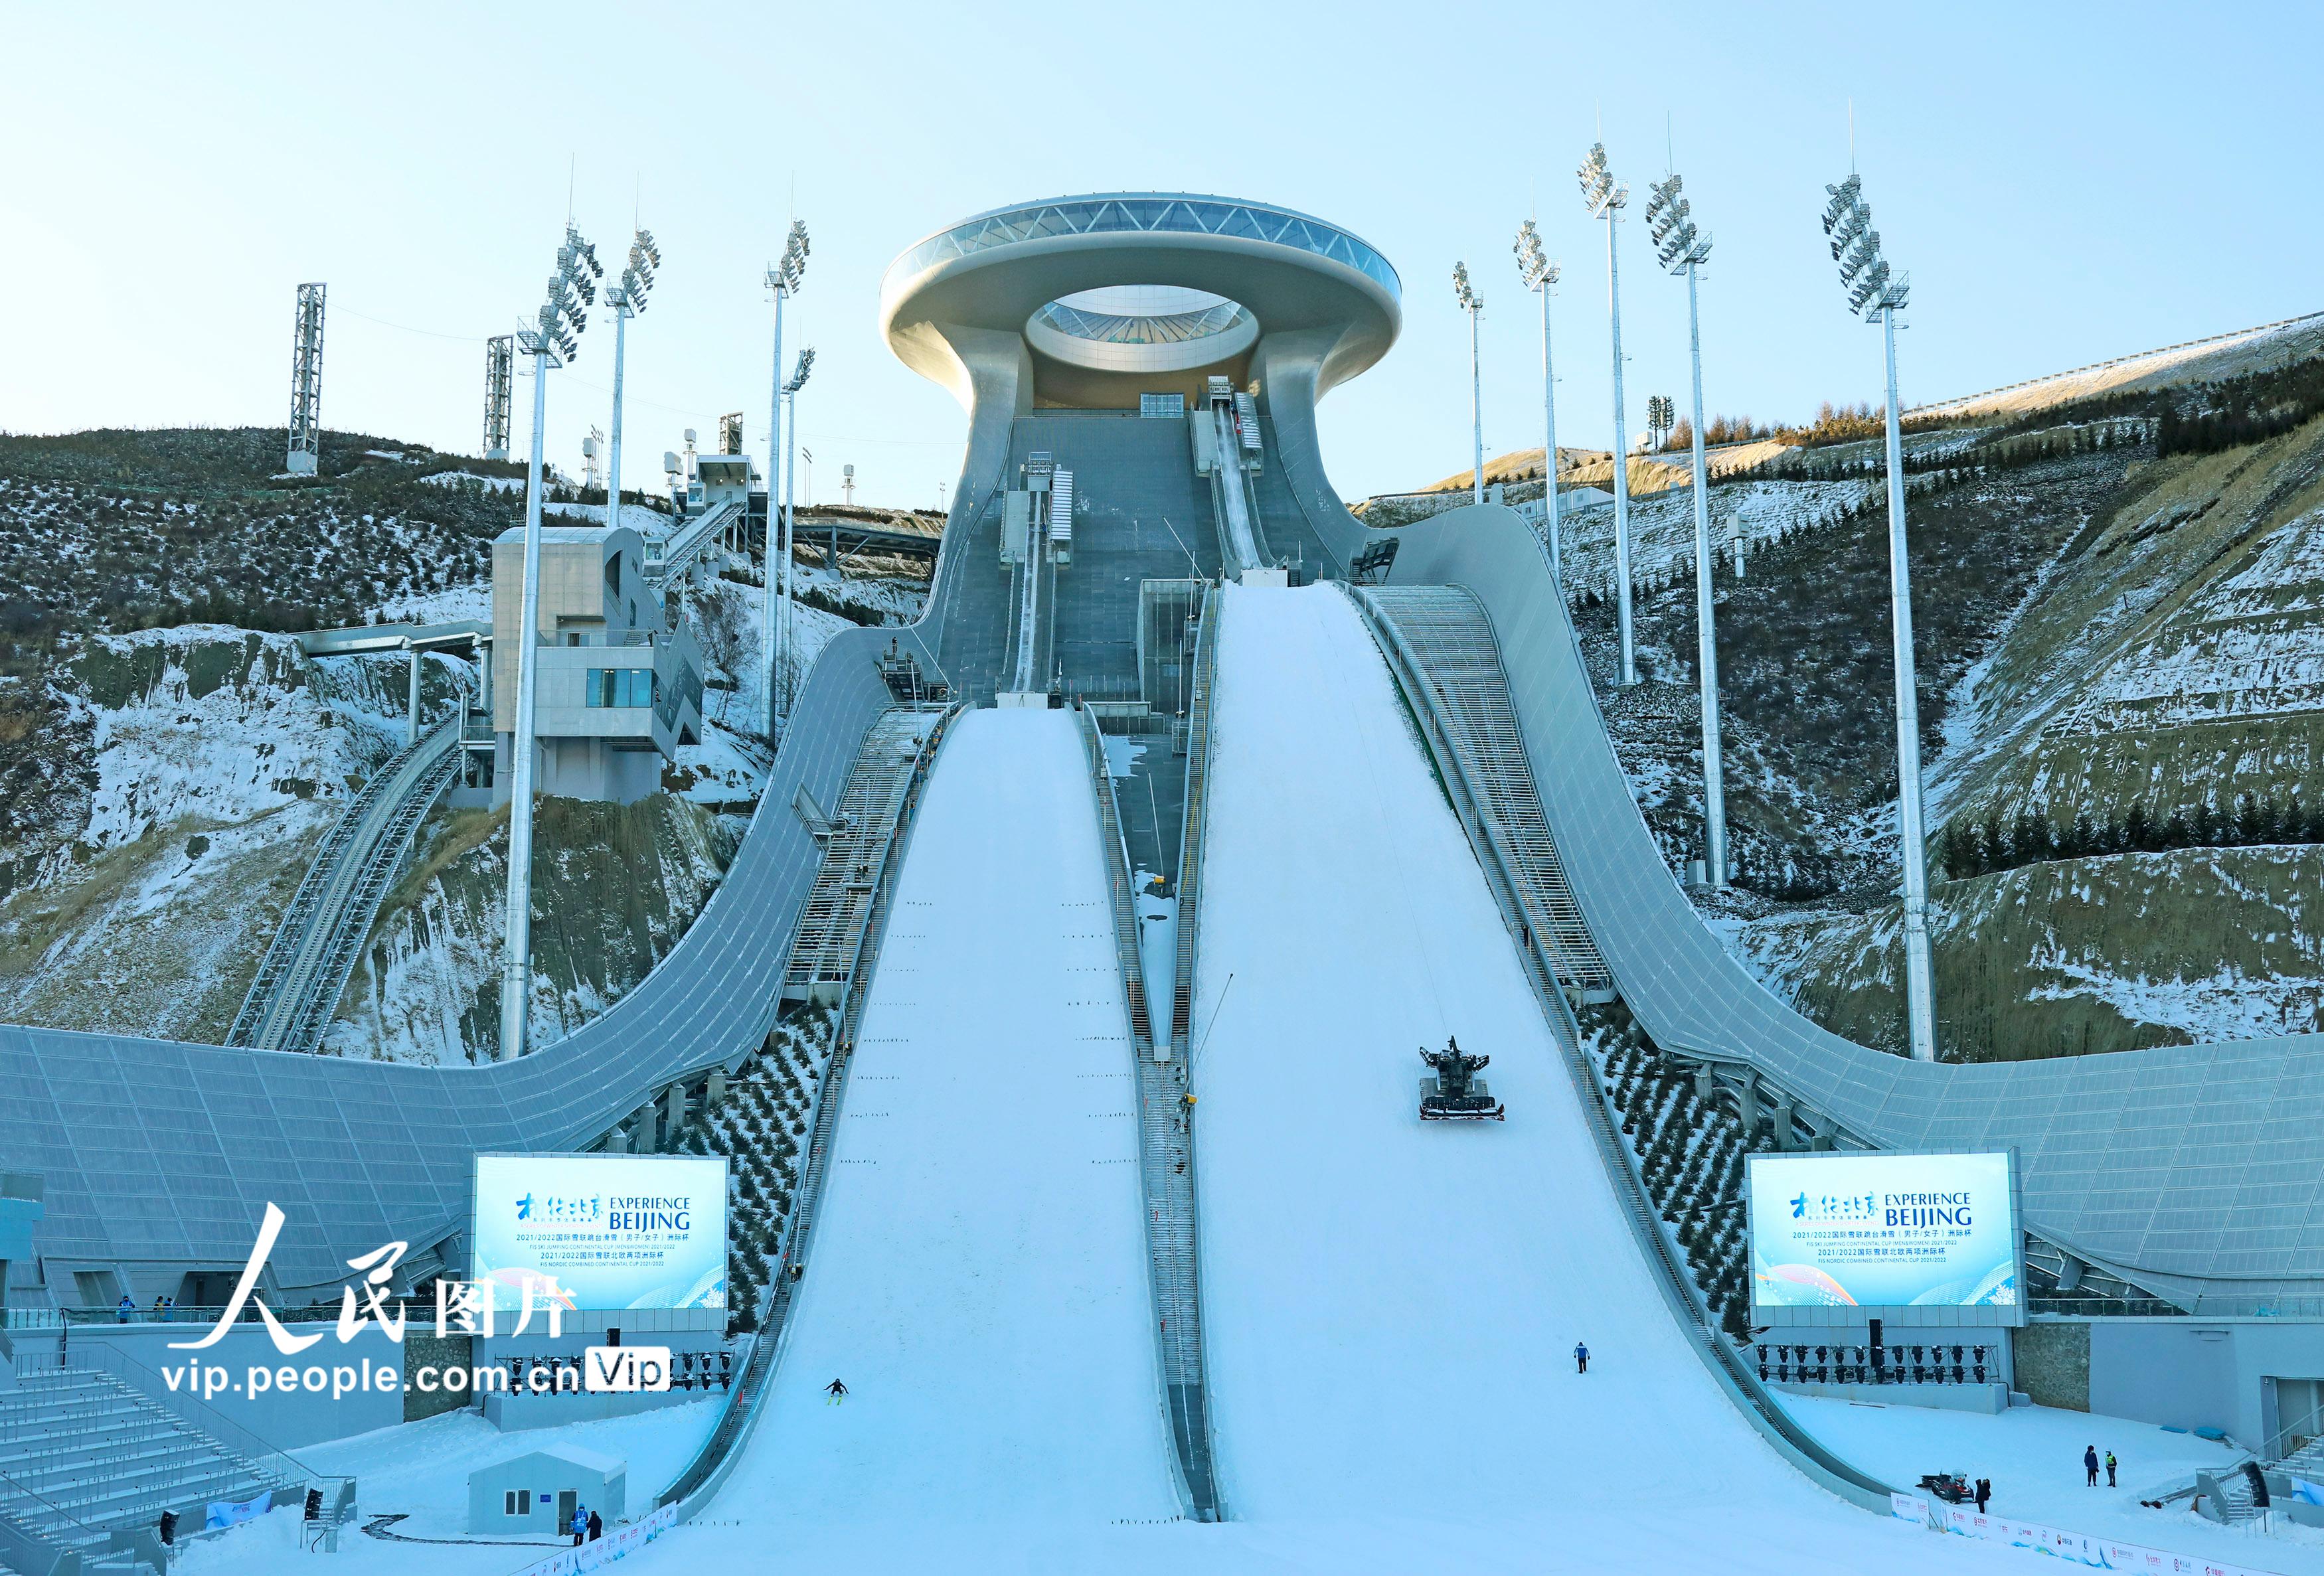 北京2022年冬奥会张家口赛区国家跳台滑雪中心迎来首日试滑